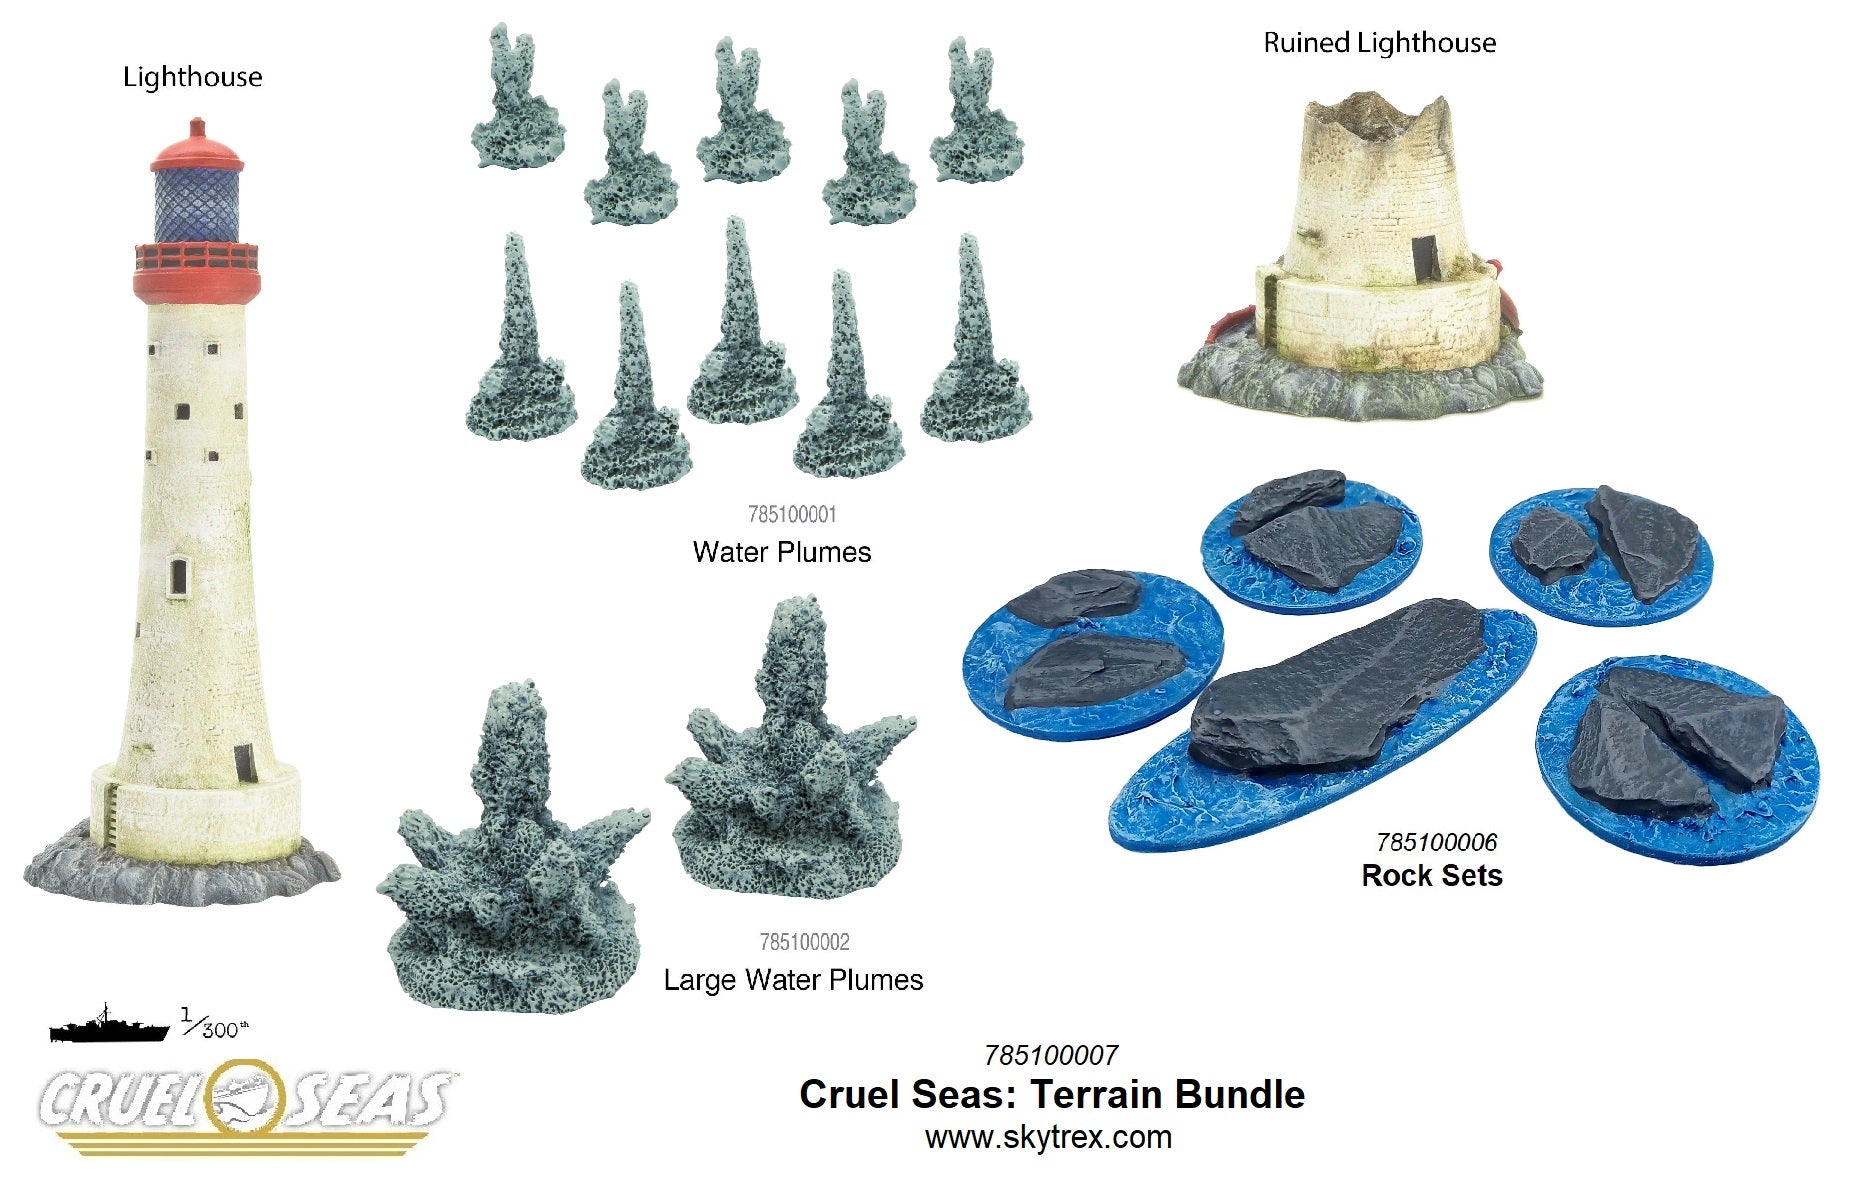 Cruel Seas: Terrain Bundle